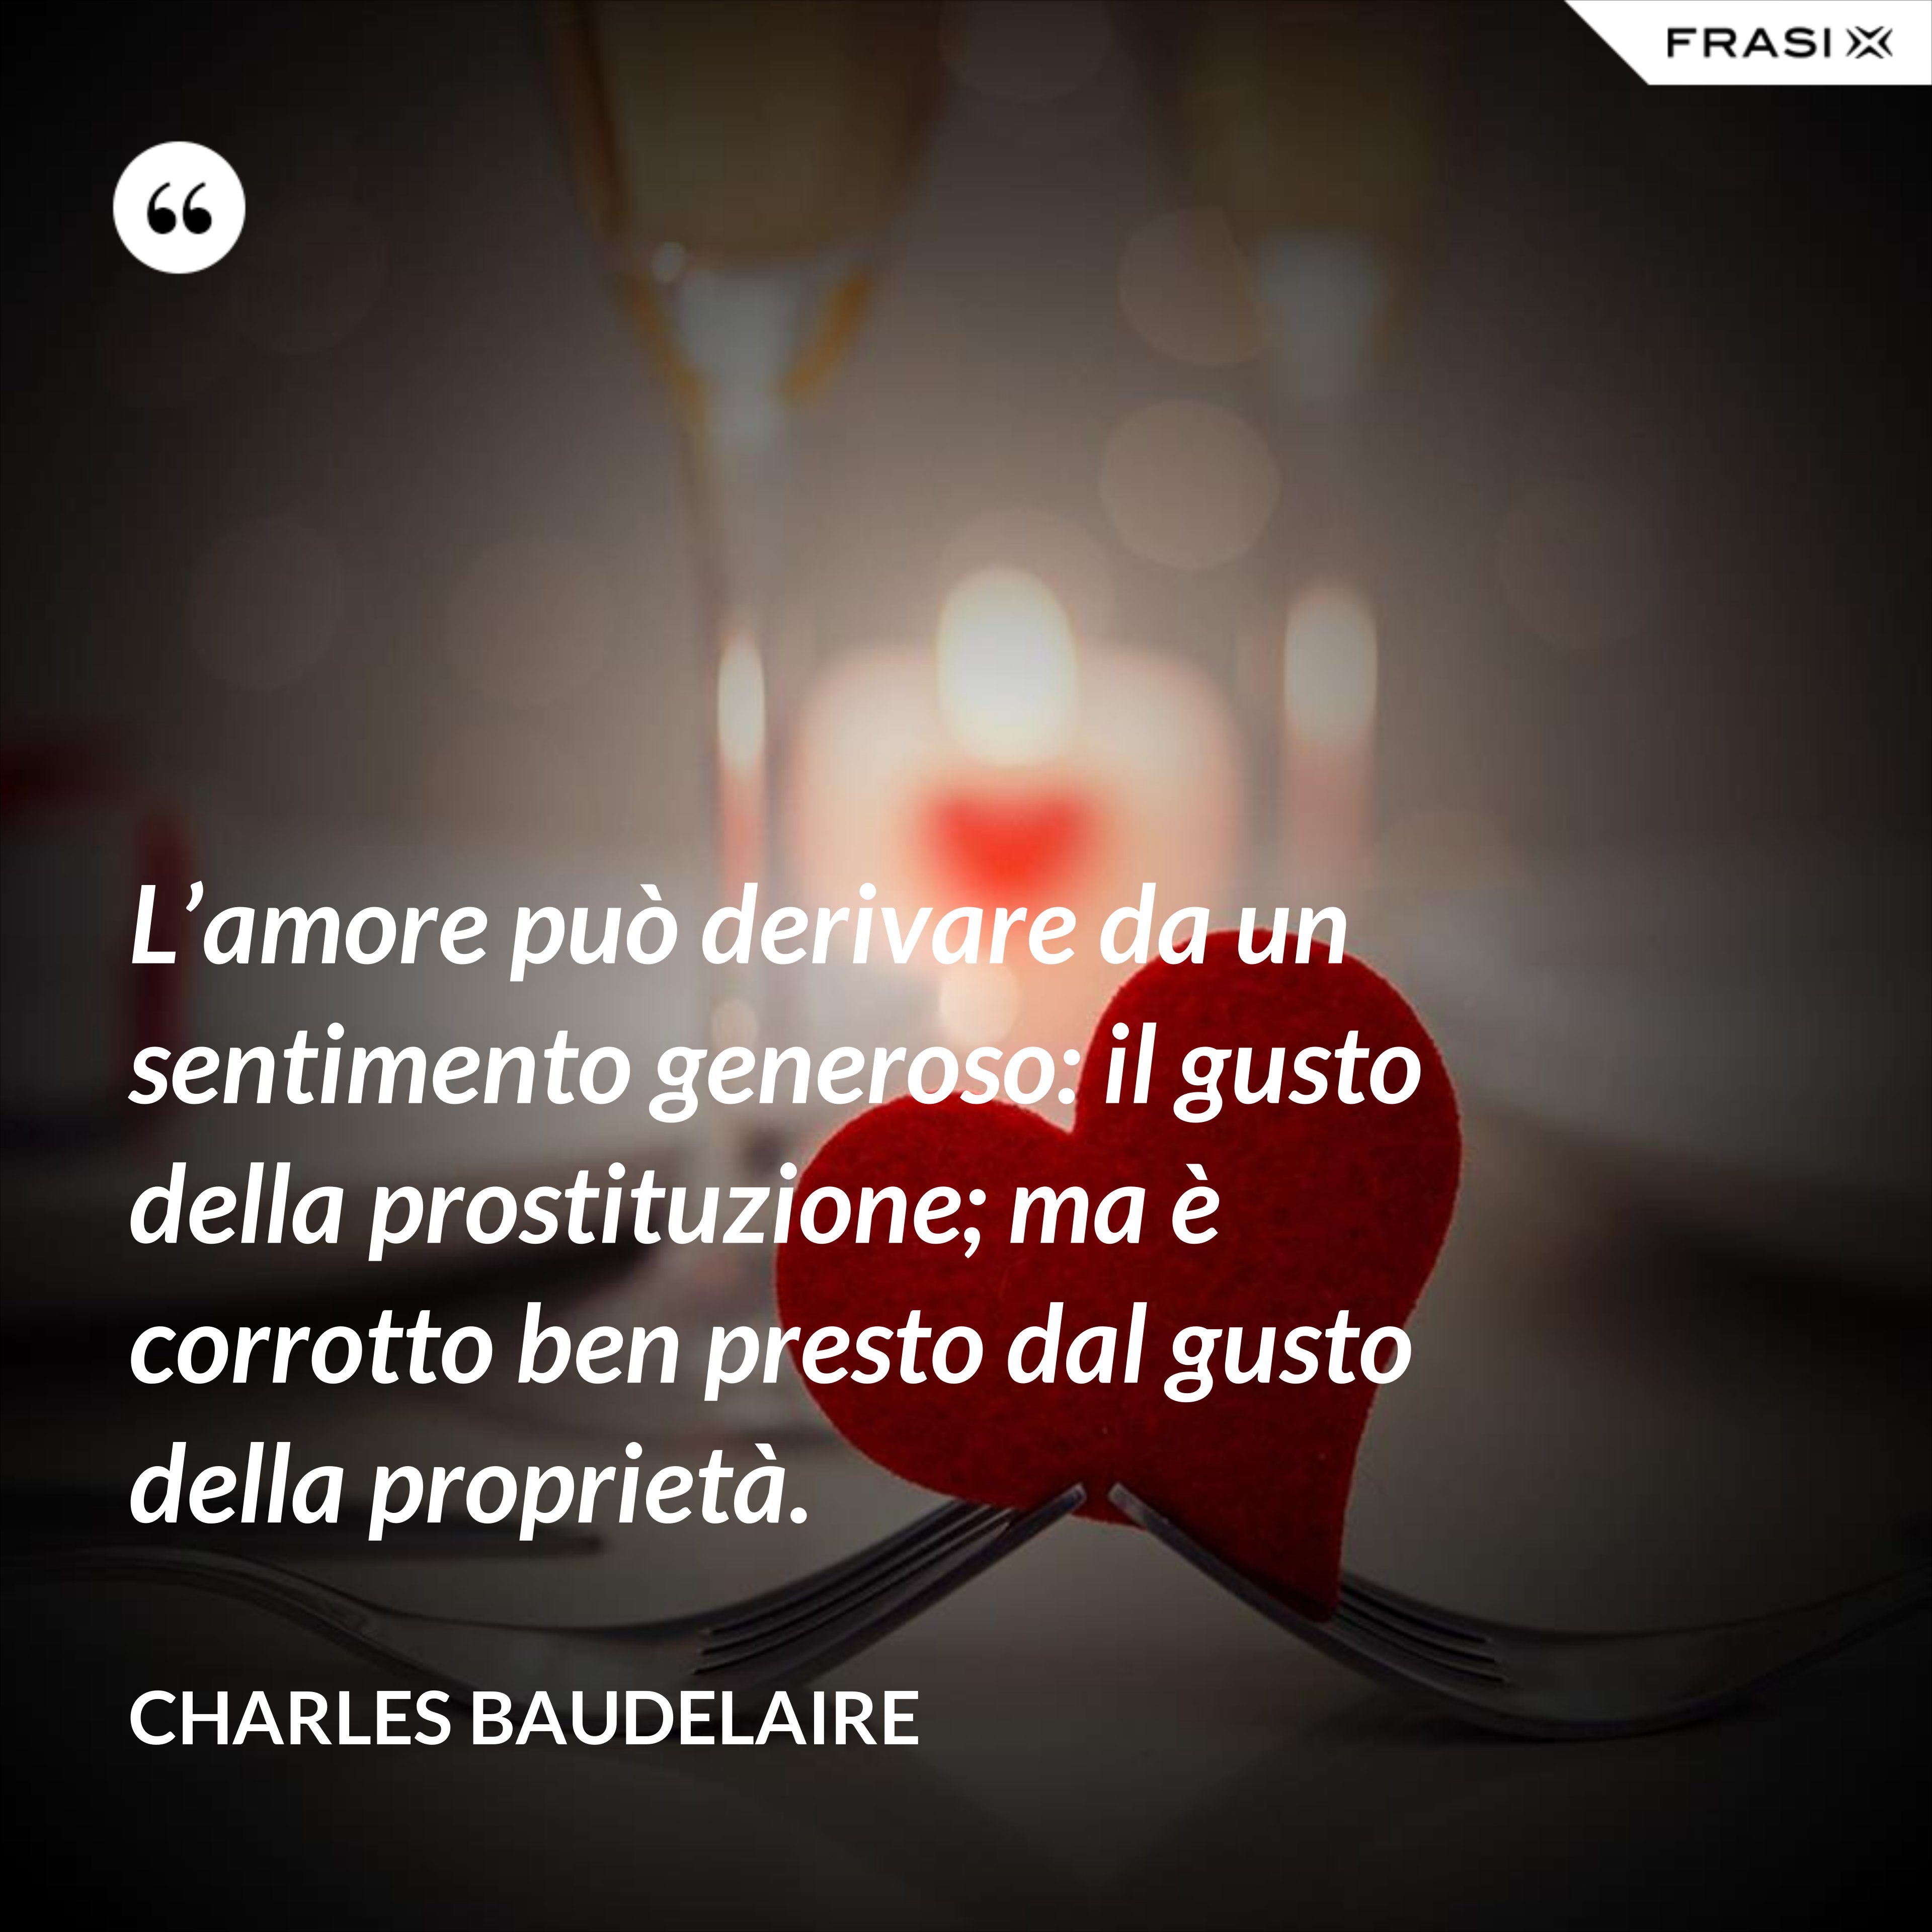 L’amore può derivare da un sentimento generoso: il gusto della prostituzione; ma è corrotto ben presto dal gusto della proprietà. - Charles Baudelaire